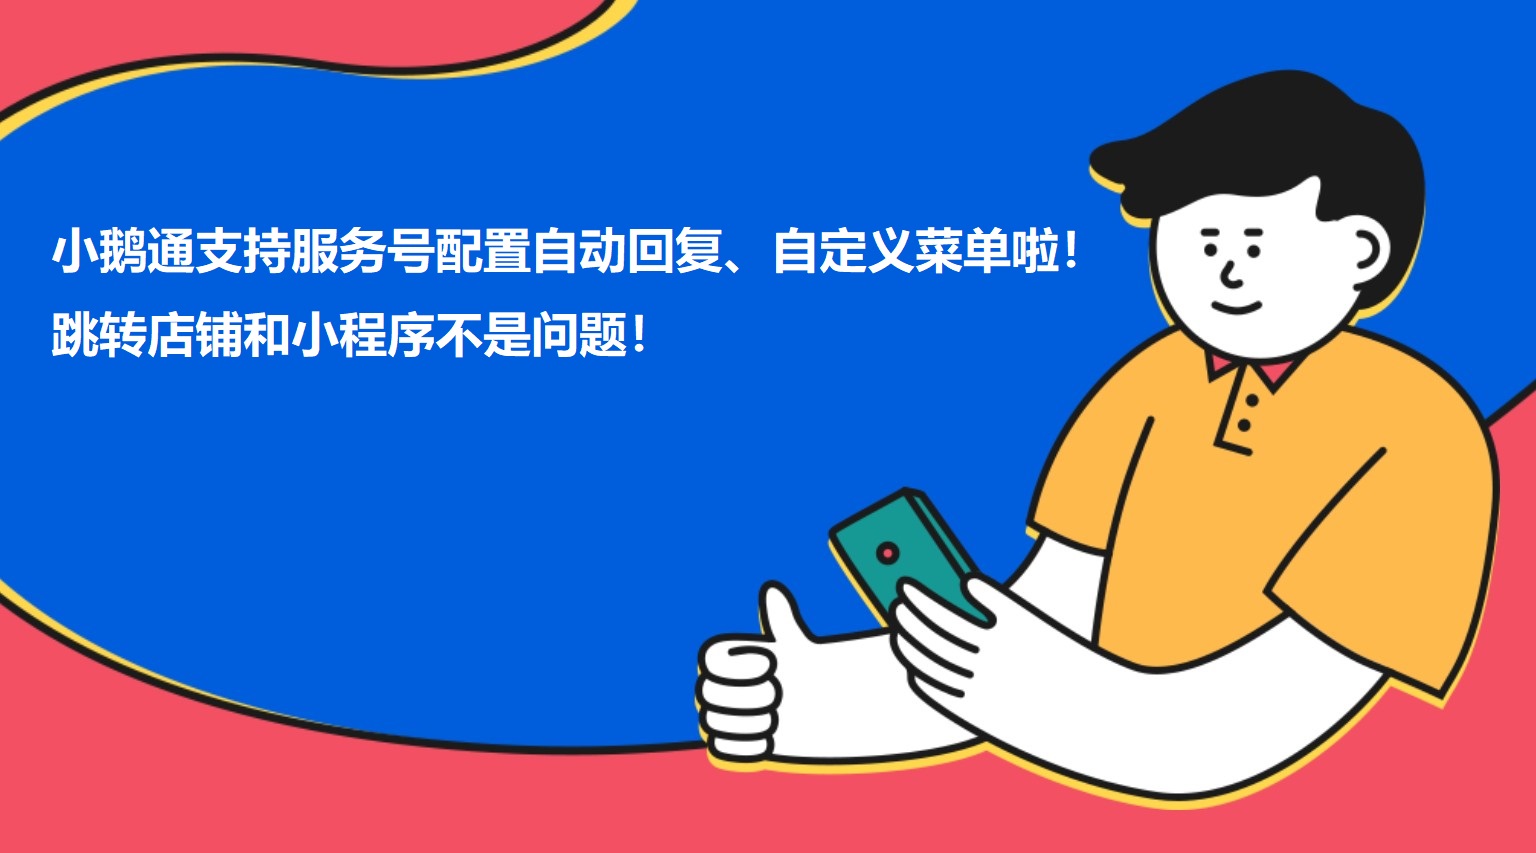 安徽小鹅通支持服务号配置自动回复、自定义菜单啦！跳转店铺和小程序不是问题！